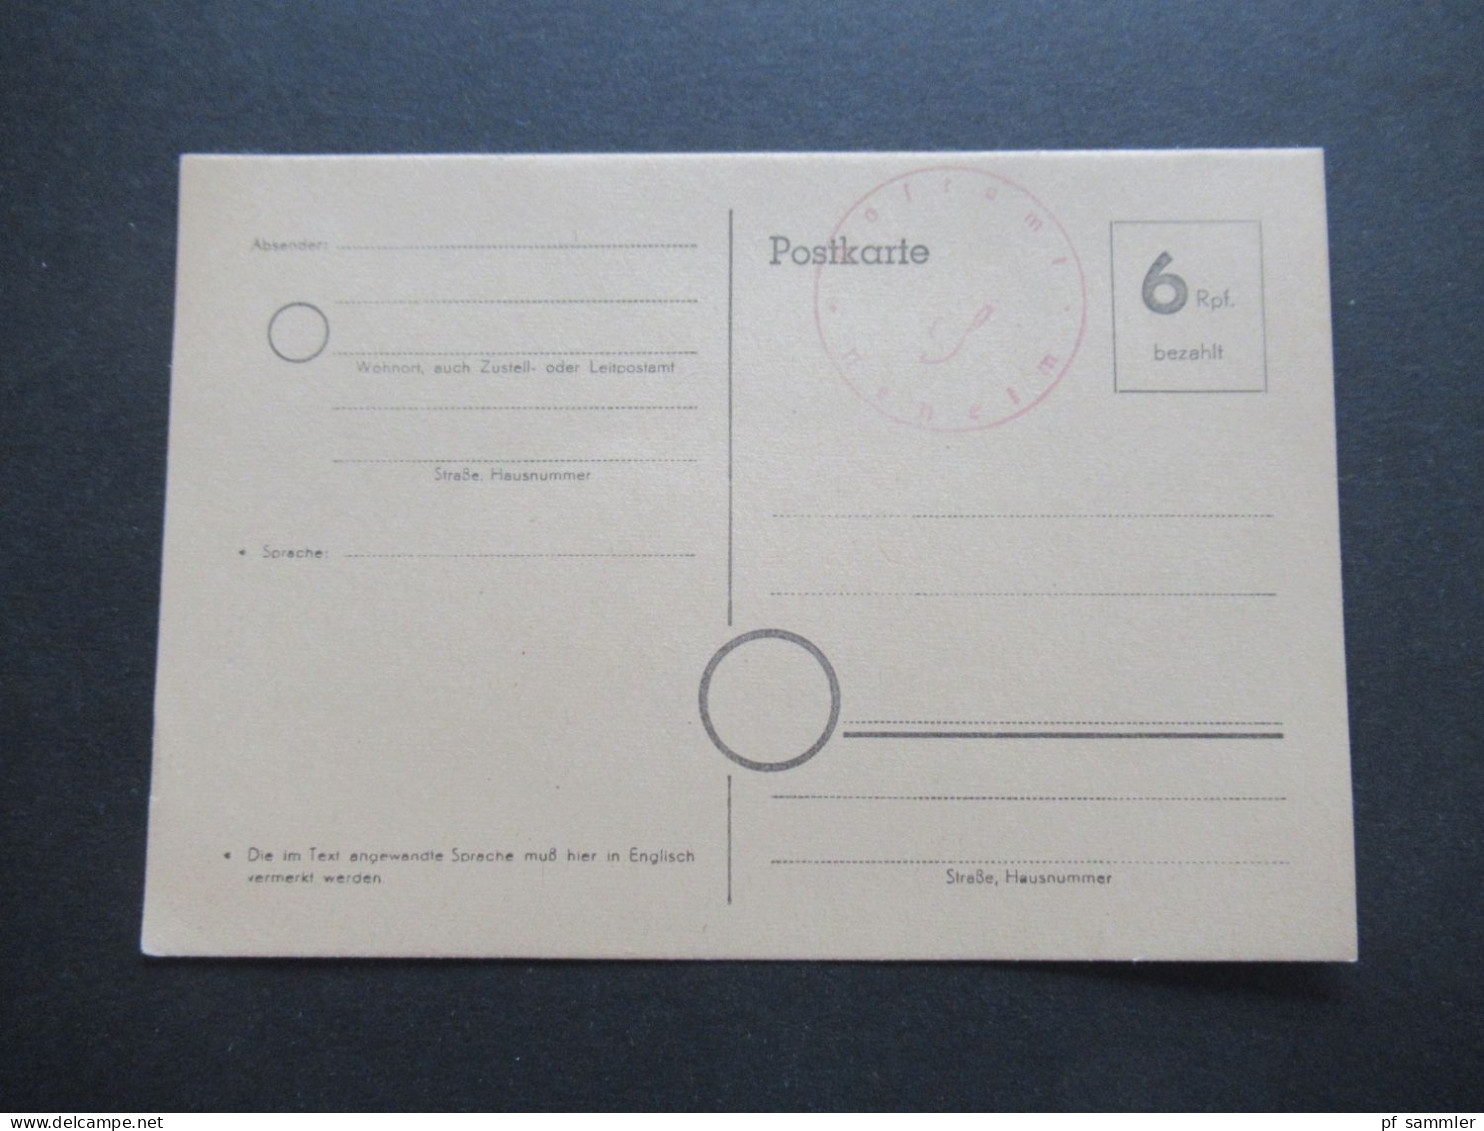 Bizone Behelfsausgabe Ganzsache 6 Rpf. Bezahlt Und Stempel Postamt Neheim / Ungebraucht / 1945 / 1946 - Emissions Provisoires Zone Britannique